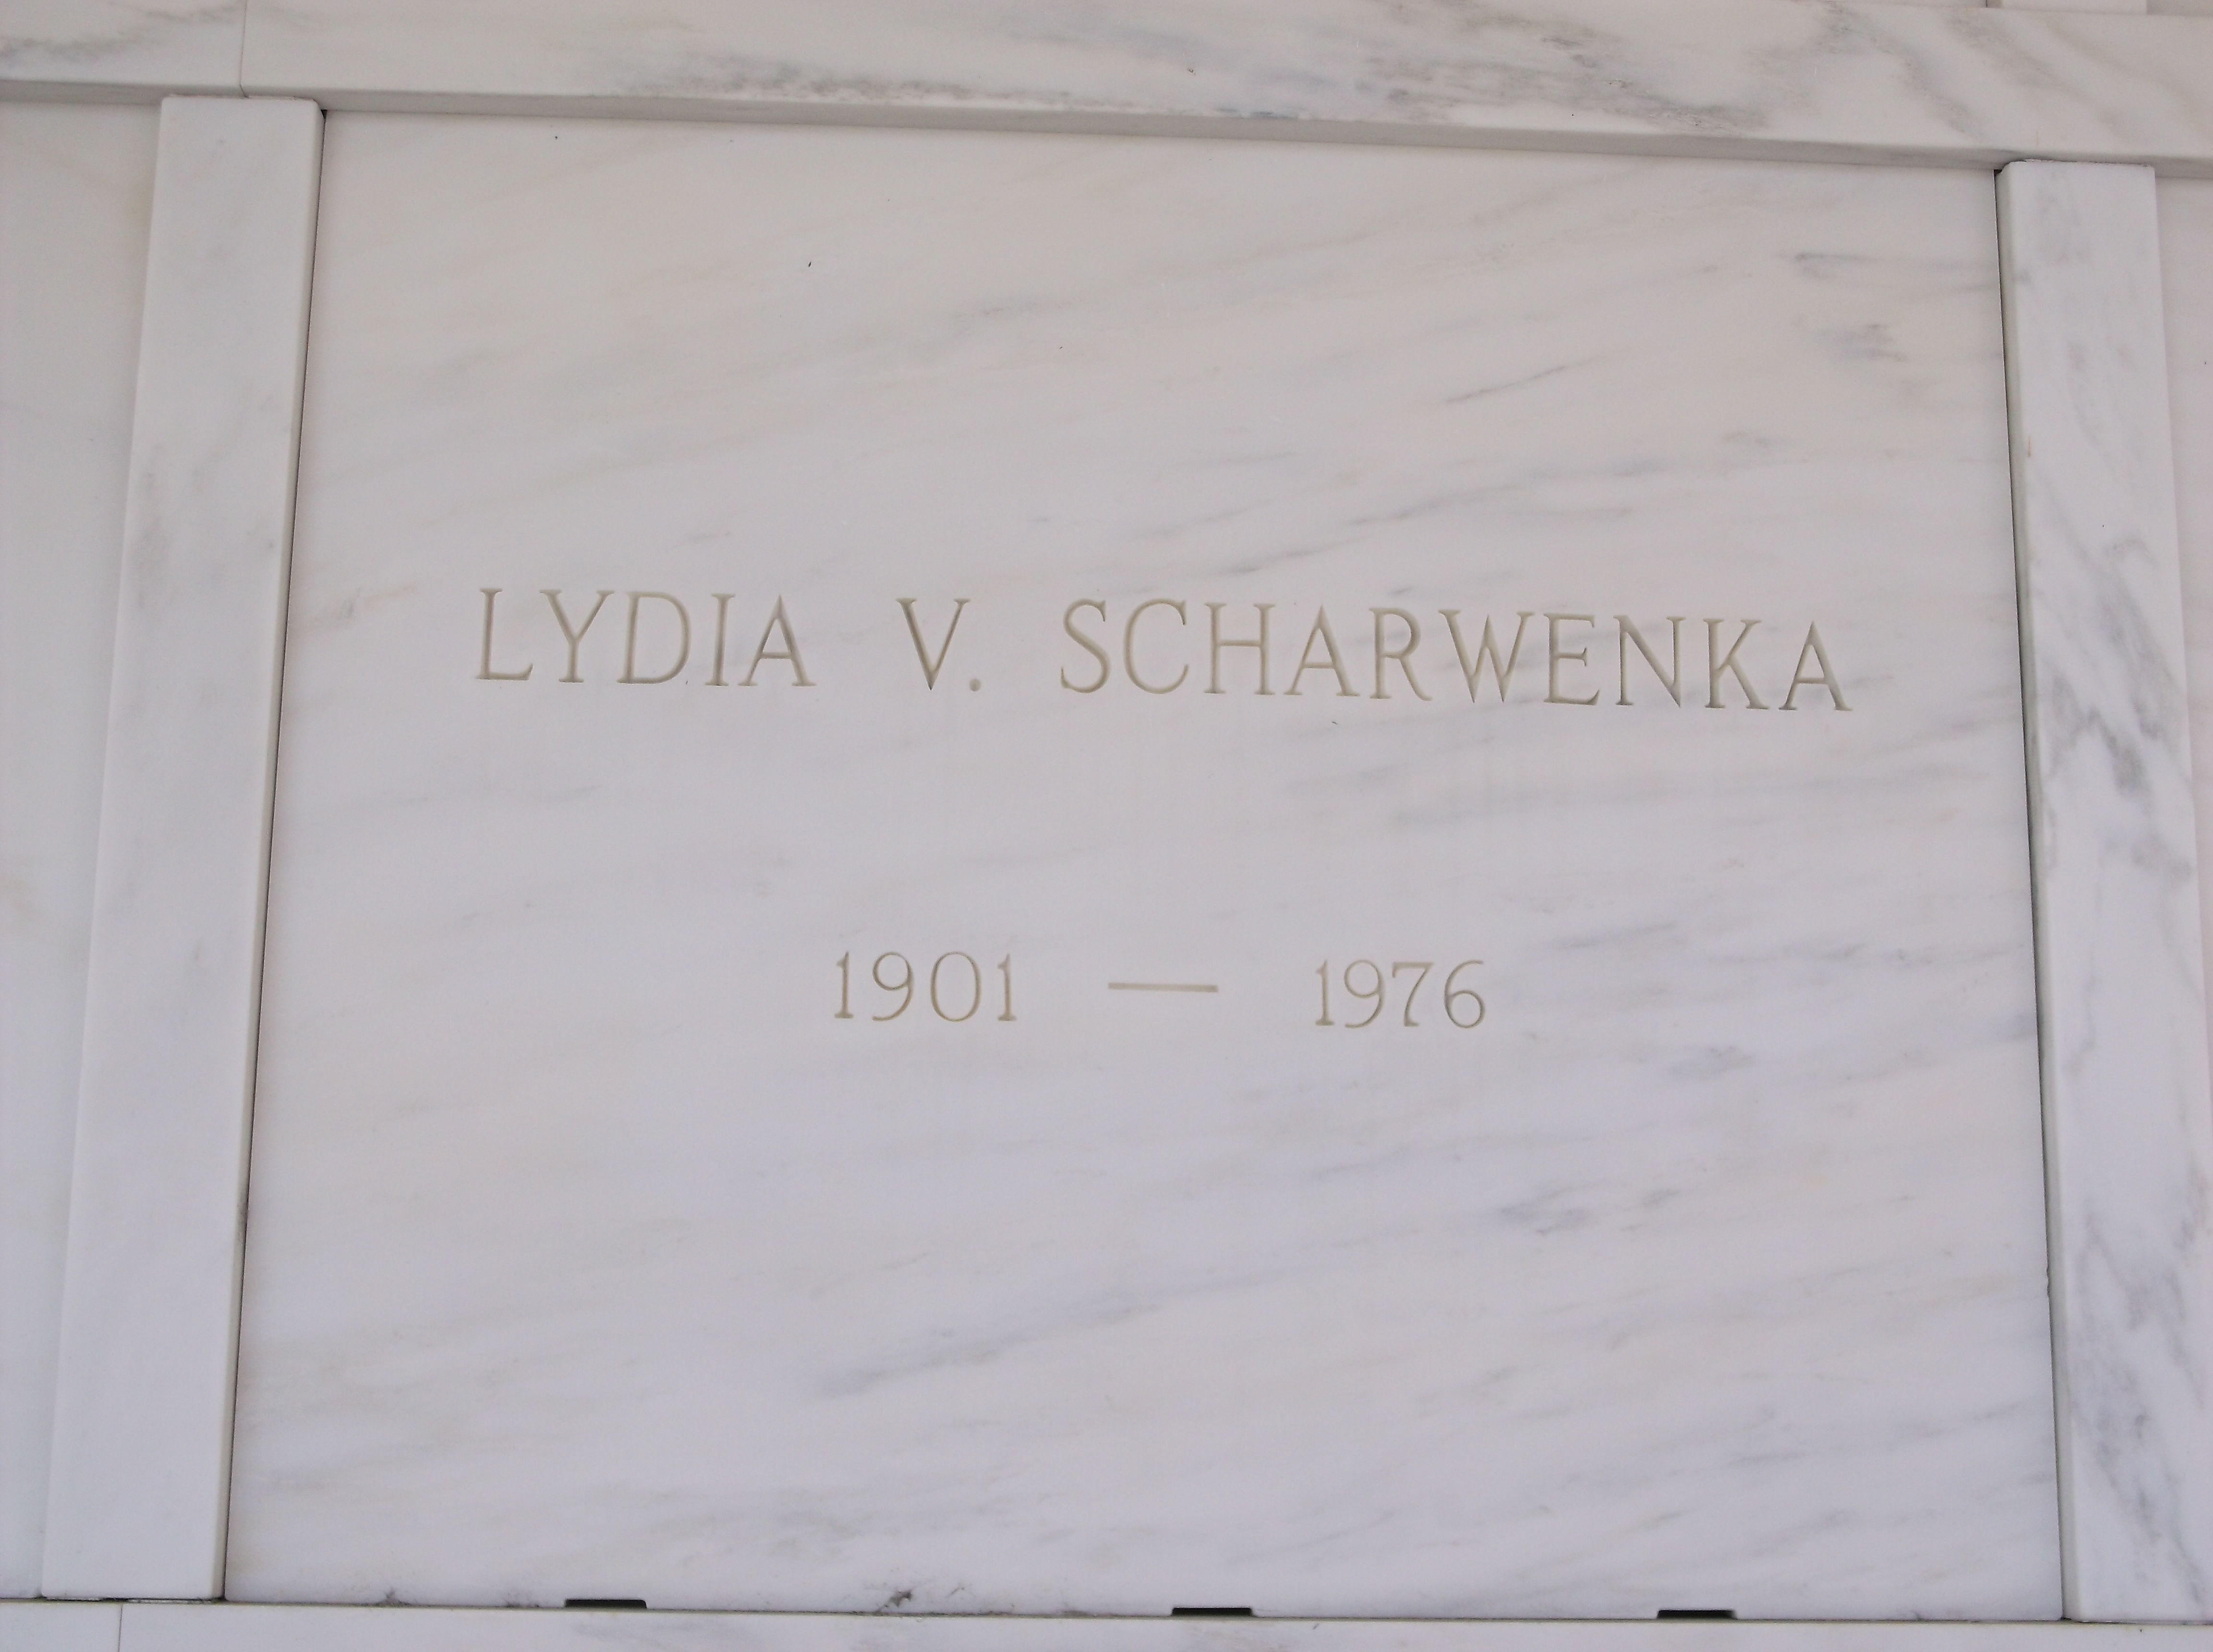 Lydia V Scharwenka